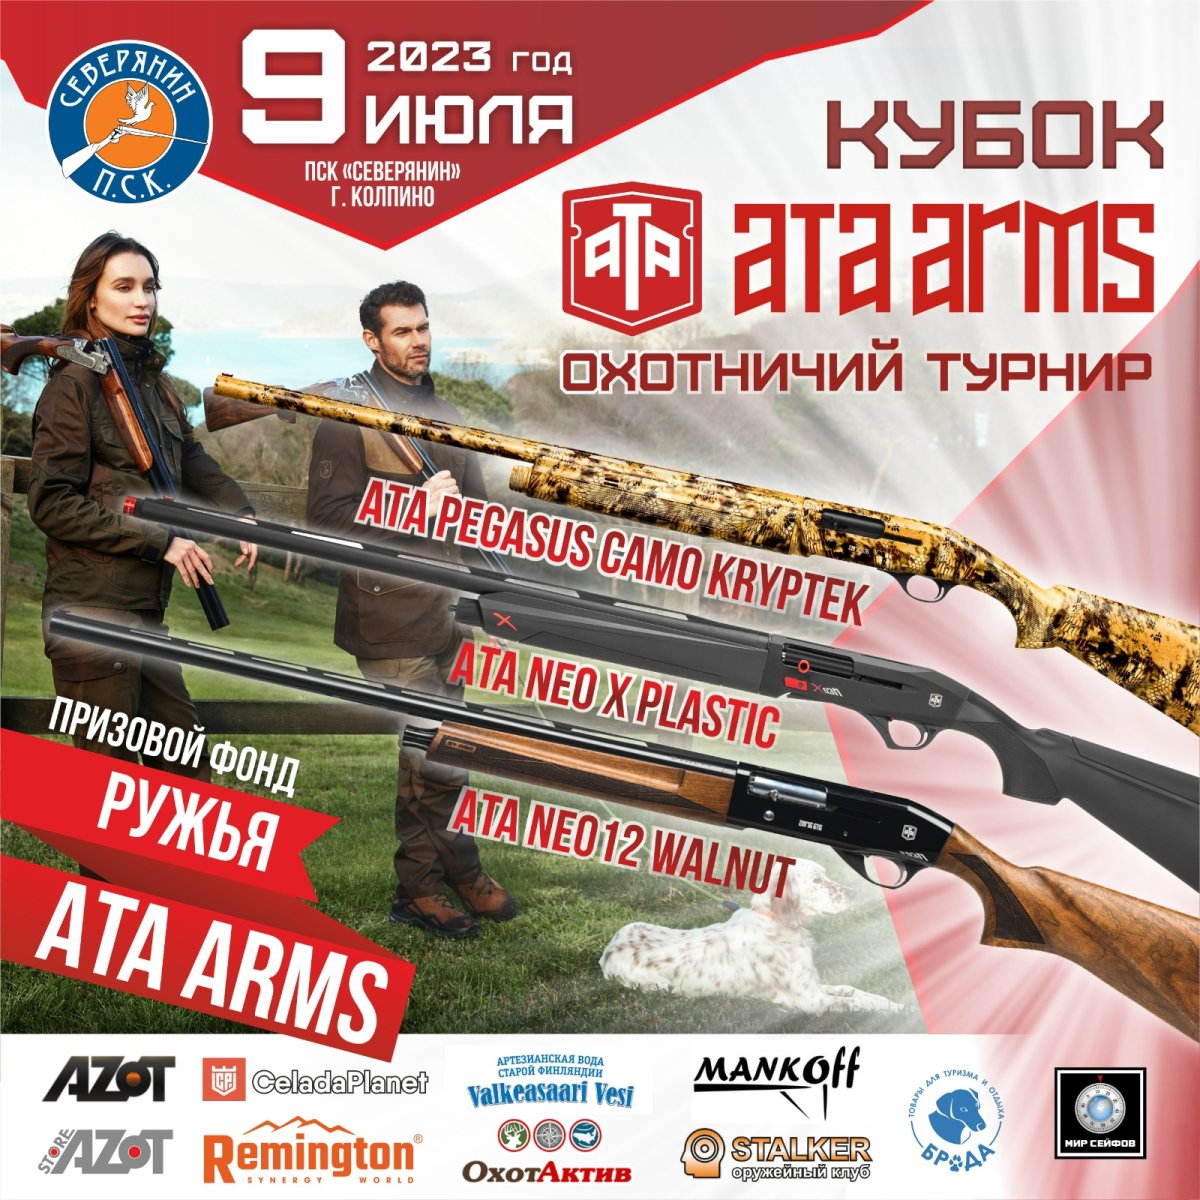 3 ружья ATA ARMS.JPG